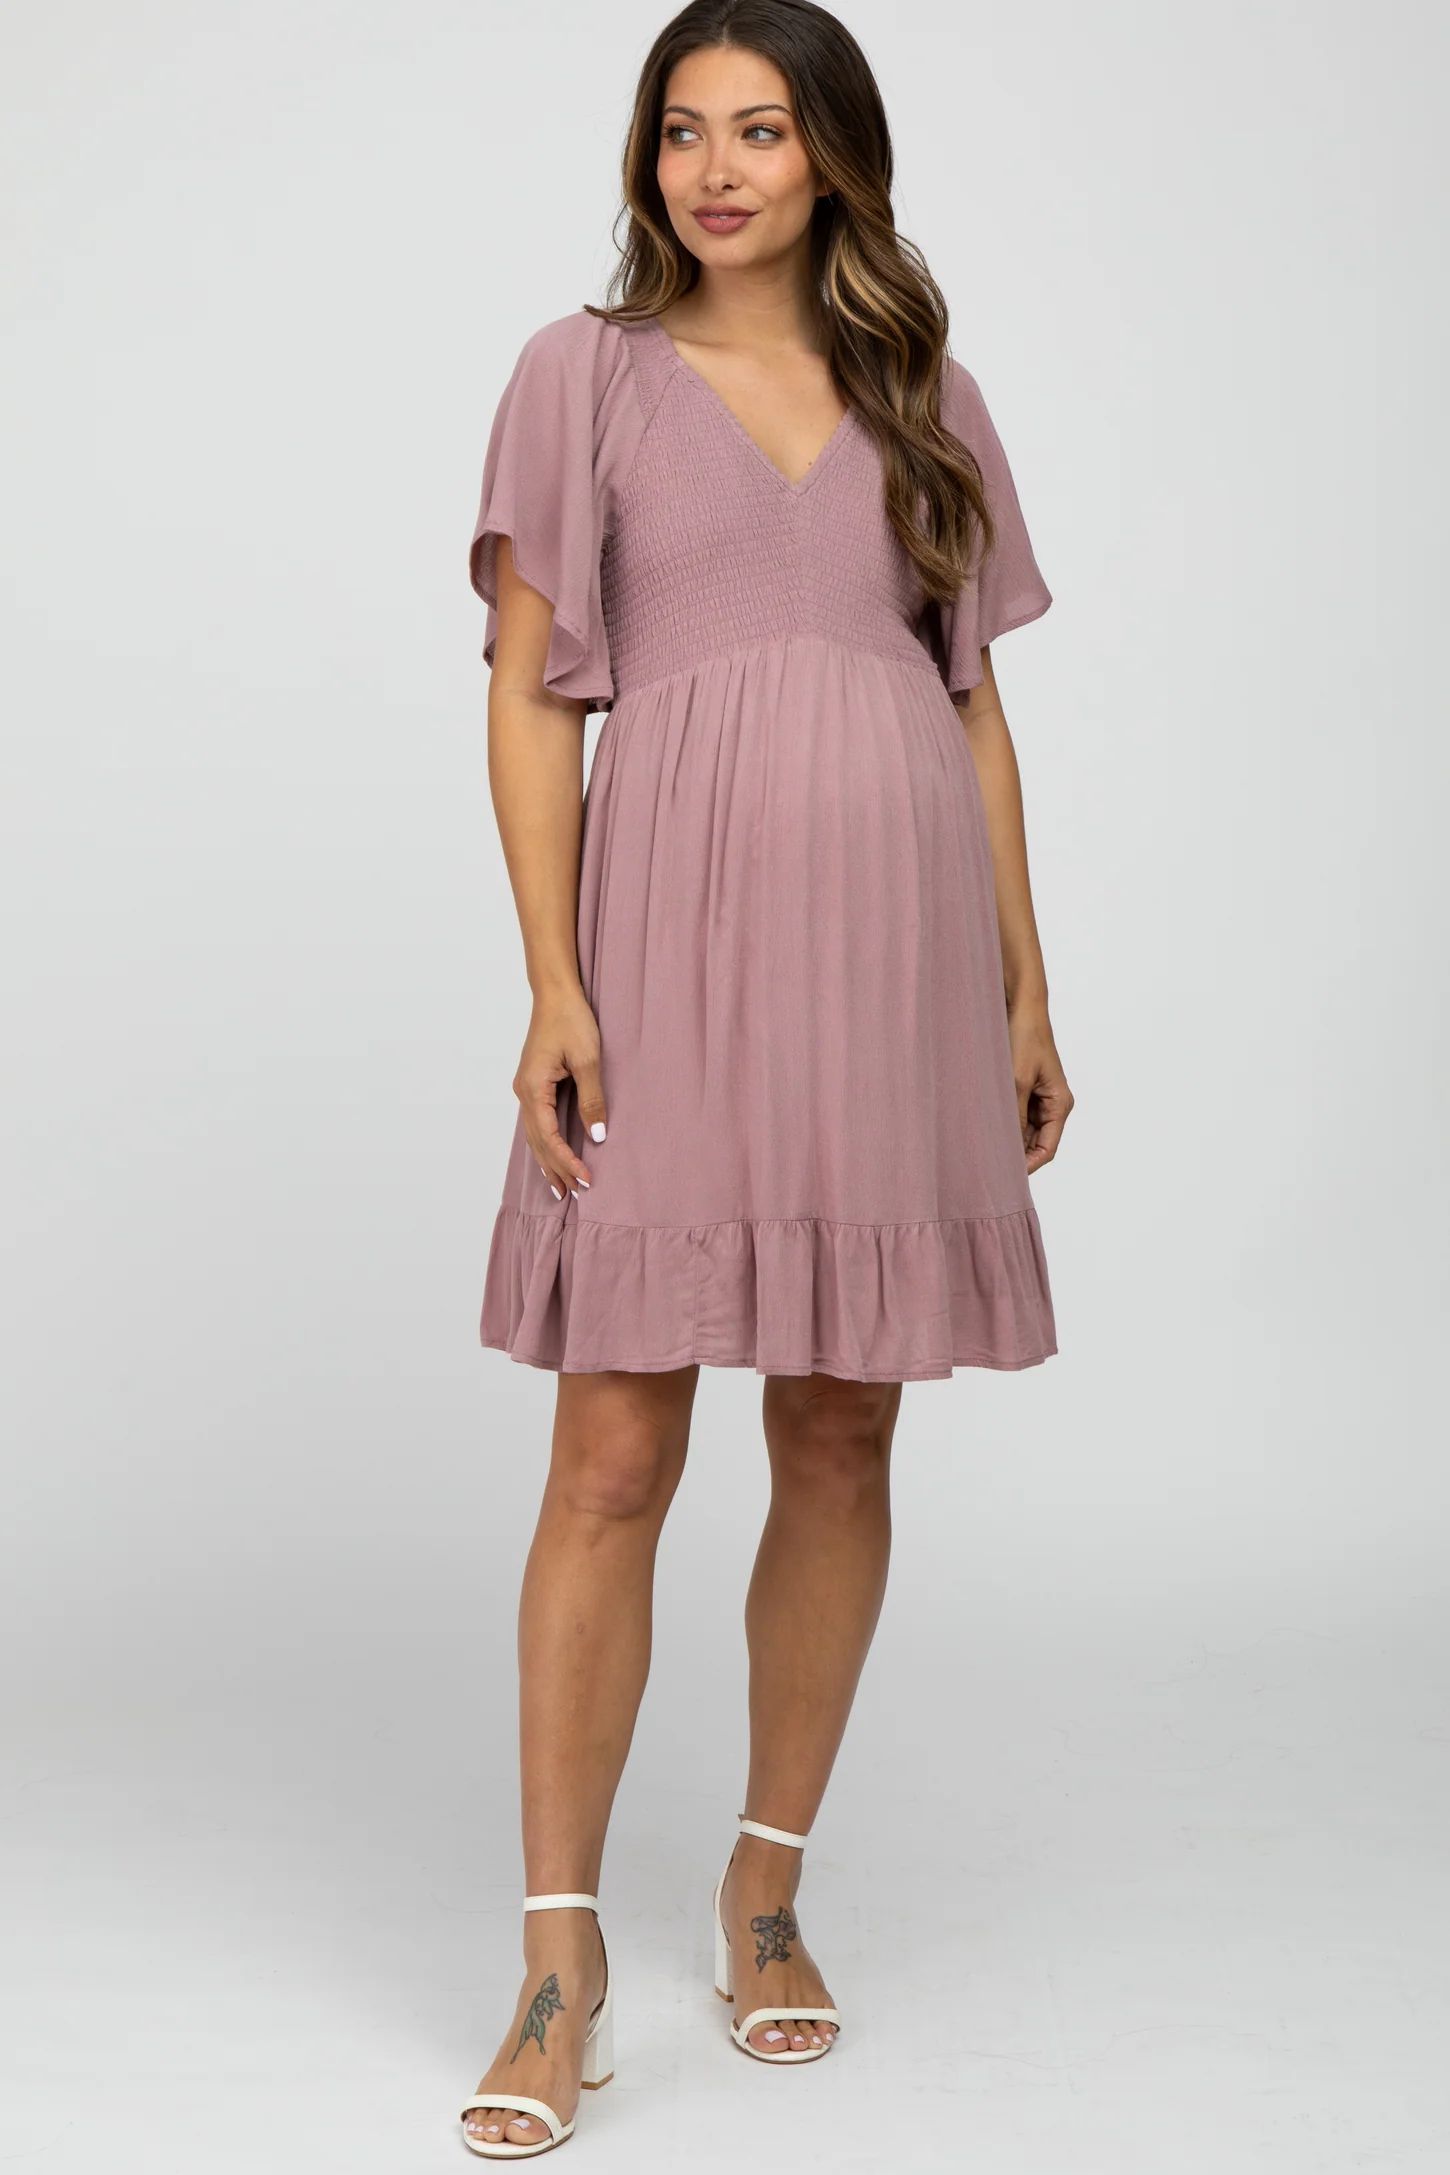 Mauve Smocked Front Ruffle Hem Maternity Dress | PinkBlush Maternity